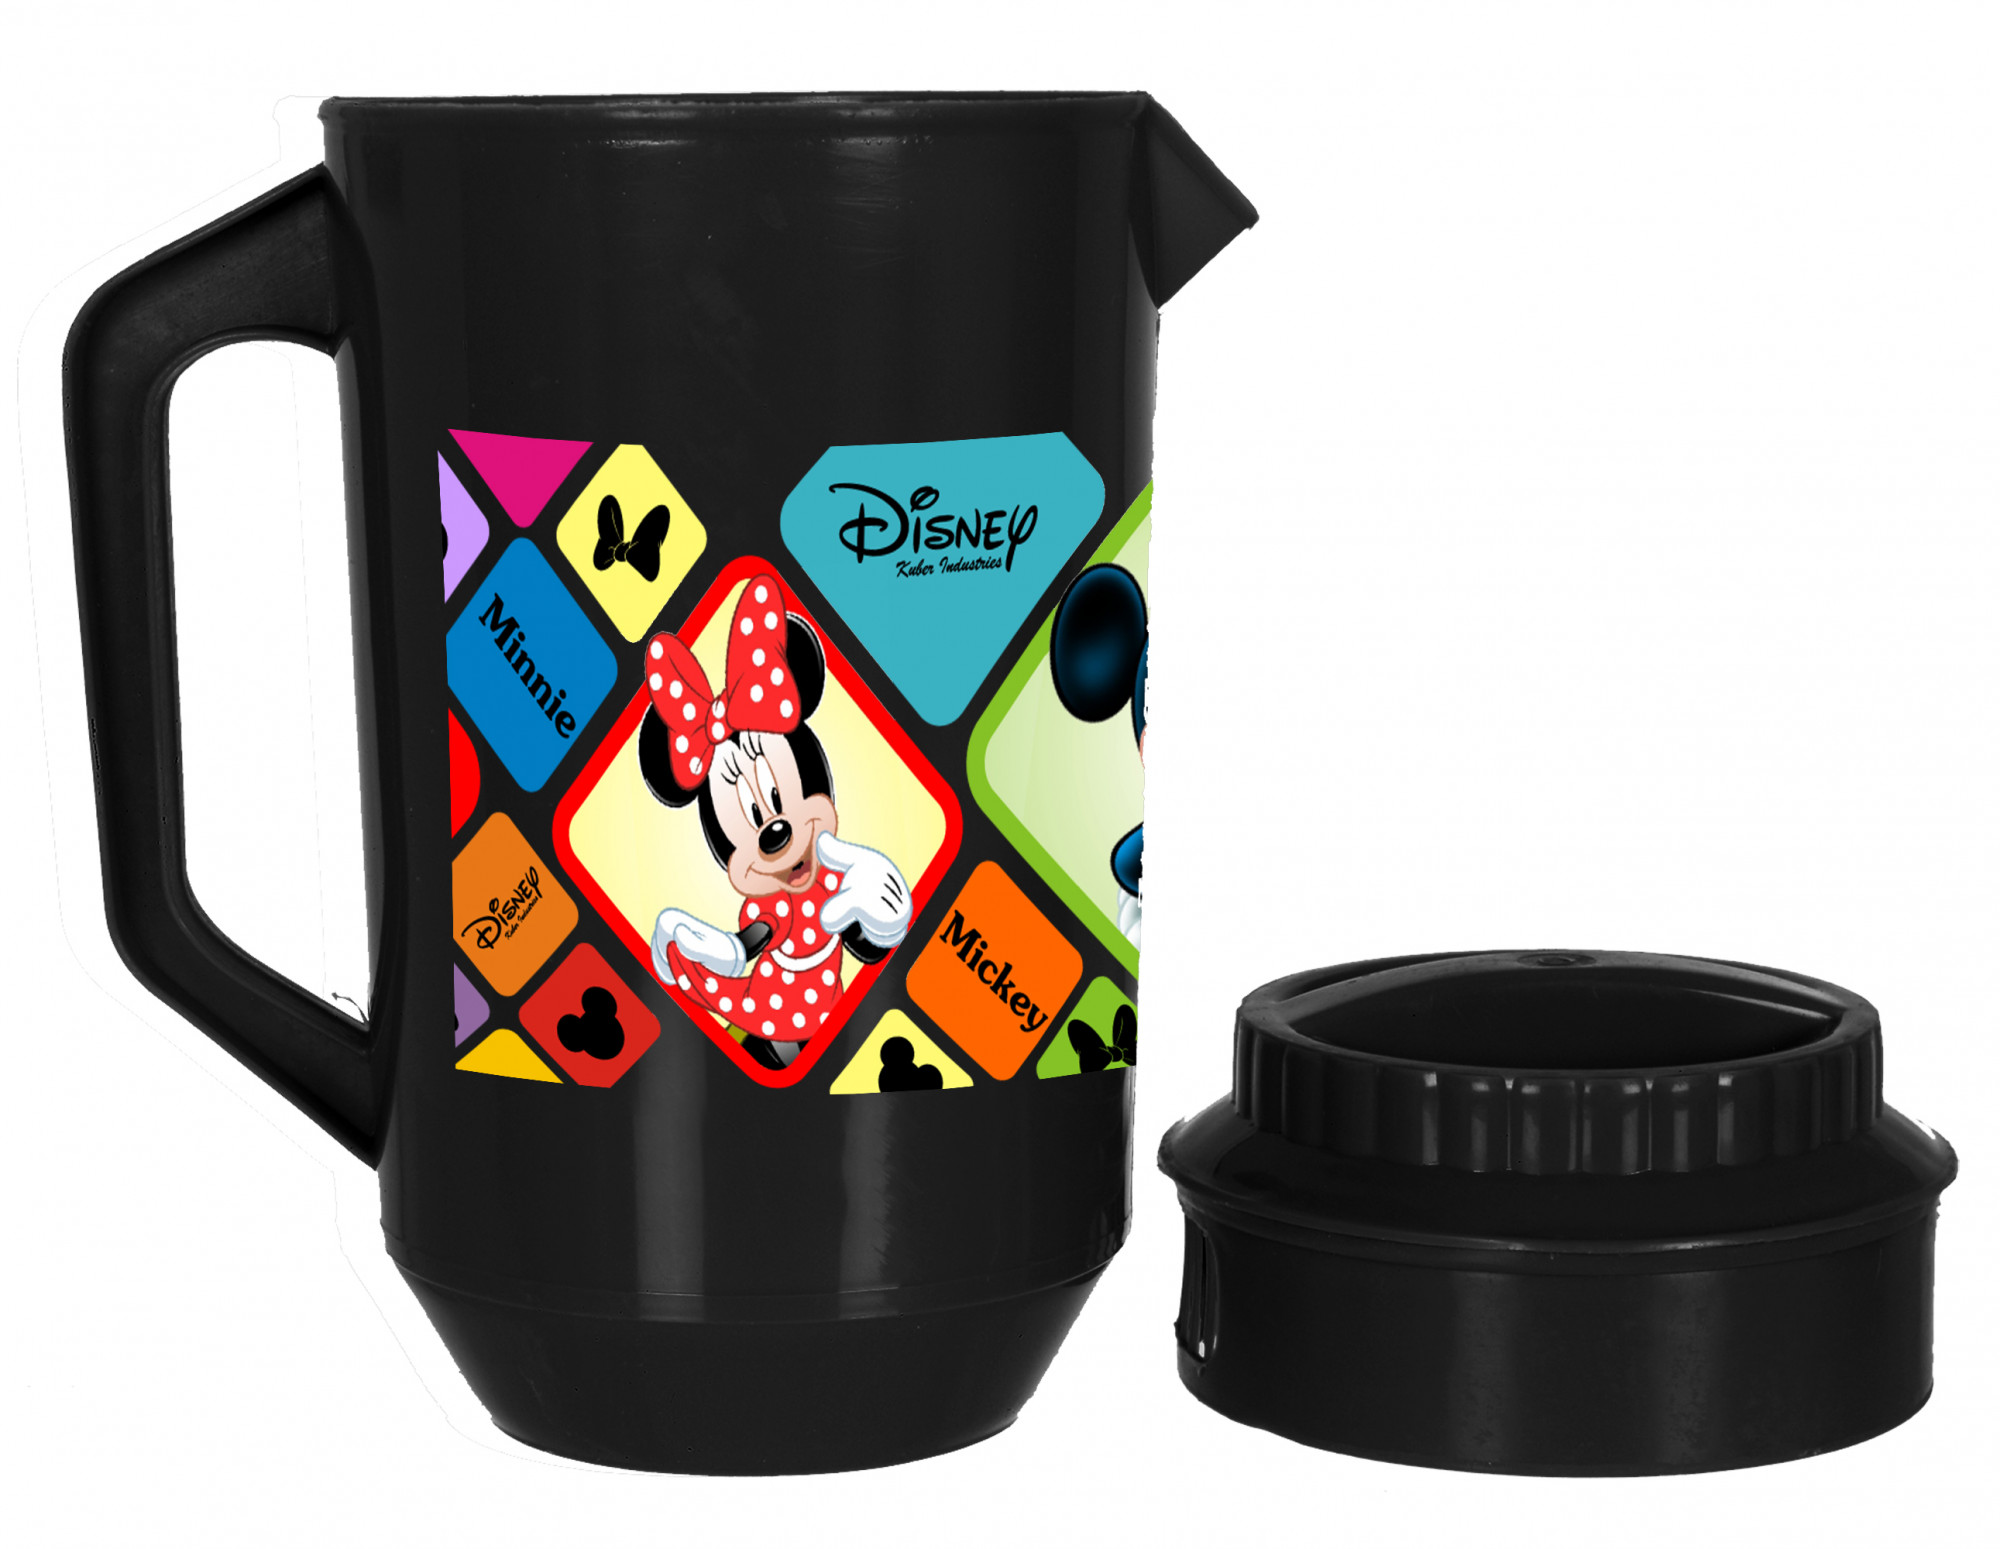 Kuber Industries Disney Mickey Minnie Print Unbreakable Multipurpose Plastic Water & Juice Jug With Lid,2 Ltr (Black)